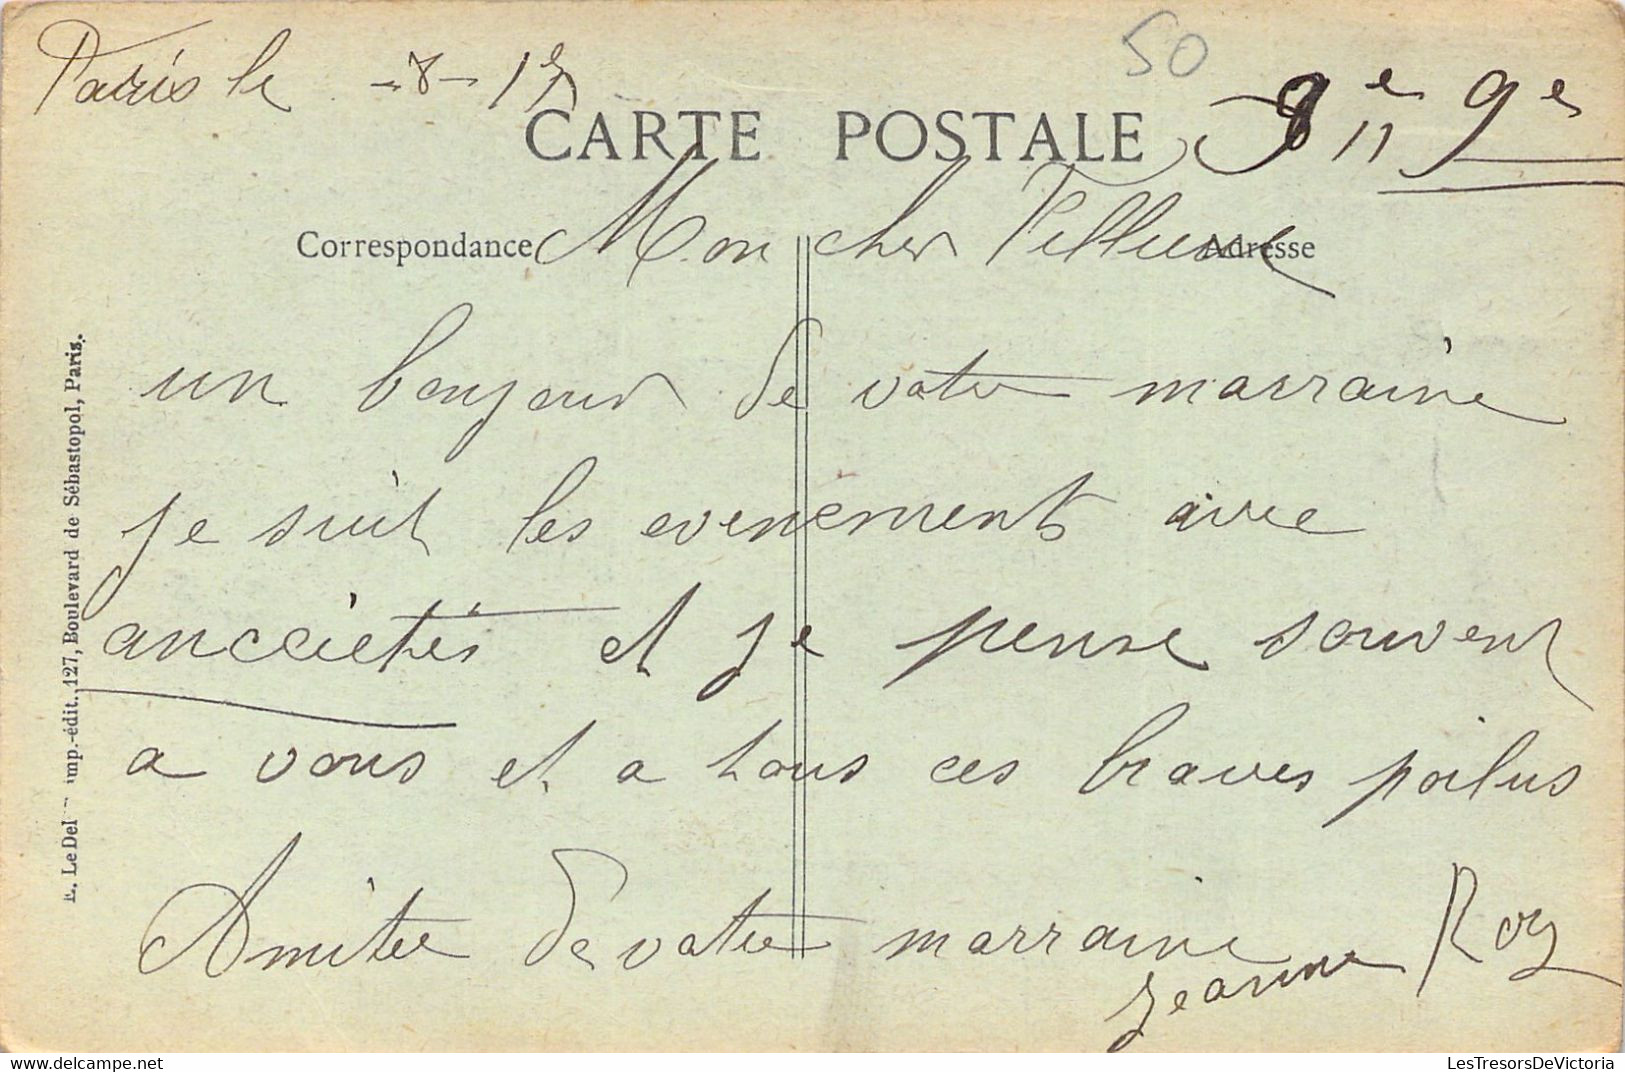 PARIS - Revue Du 14 Juillet 1917 - En Attendant Le Départ - Carte Postale Ancienne - Other & Unclassified